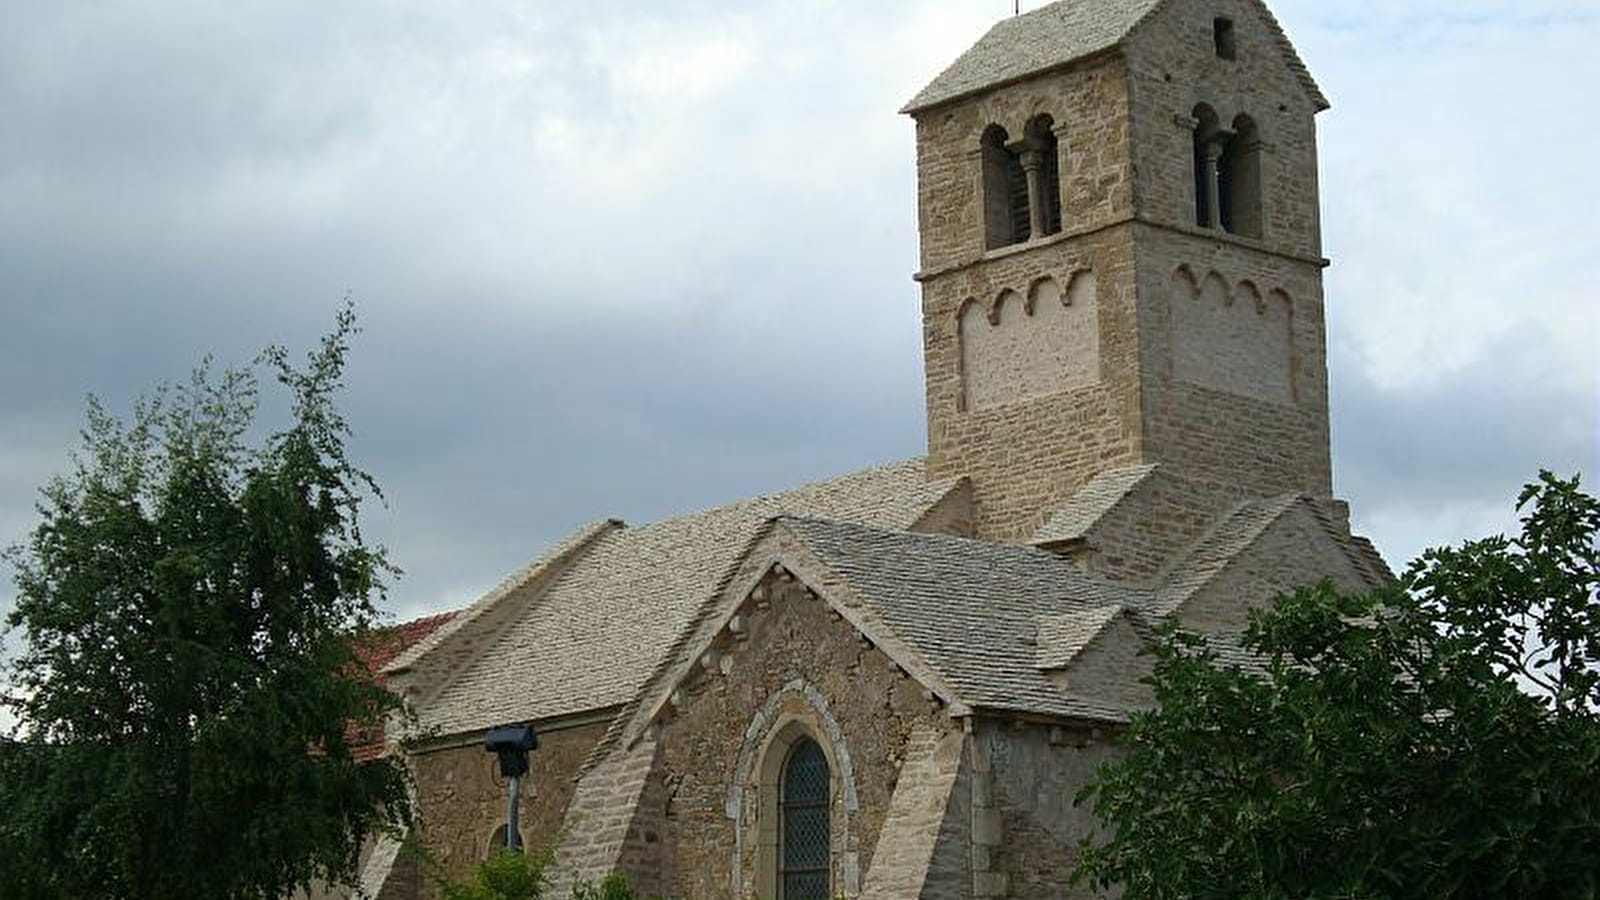 Chapelle Romane de Domange